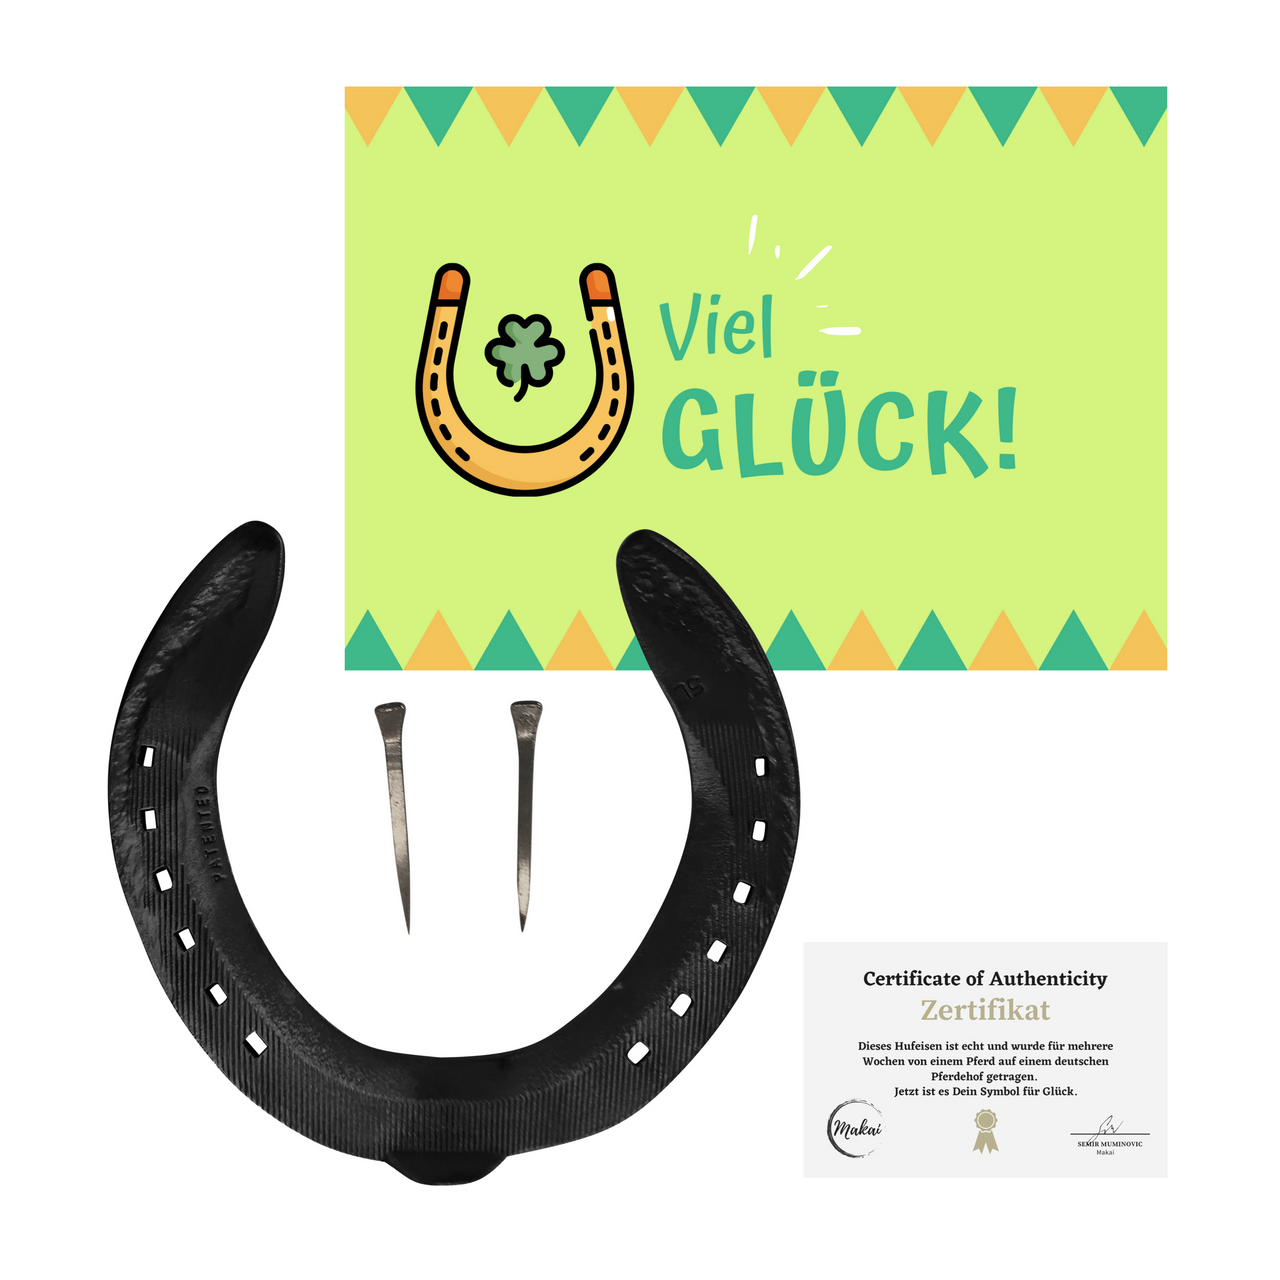 Makai echtes Pferdehufeisen mit Echtheitszertifikat, Postkarte und zwei Hufnägeln schwarz, Geschenk Glücksbringer 